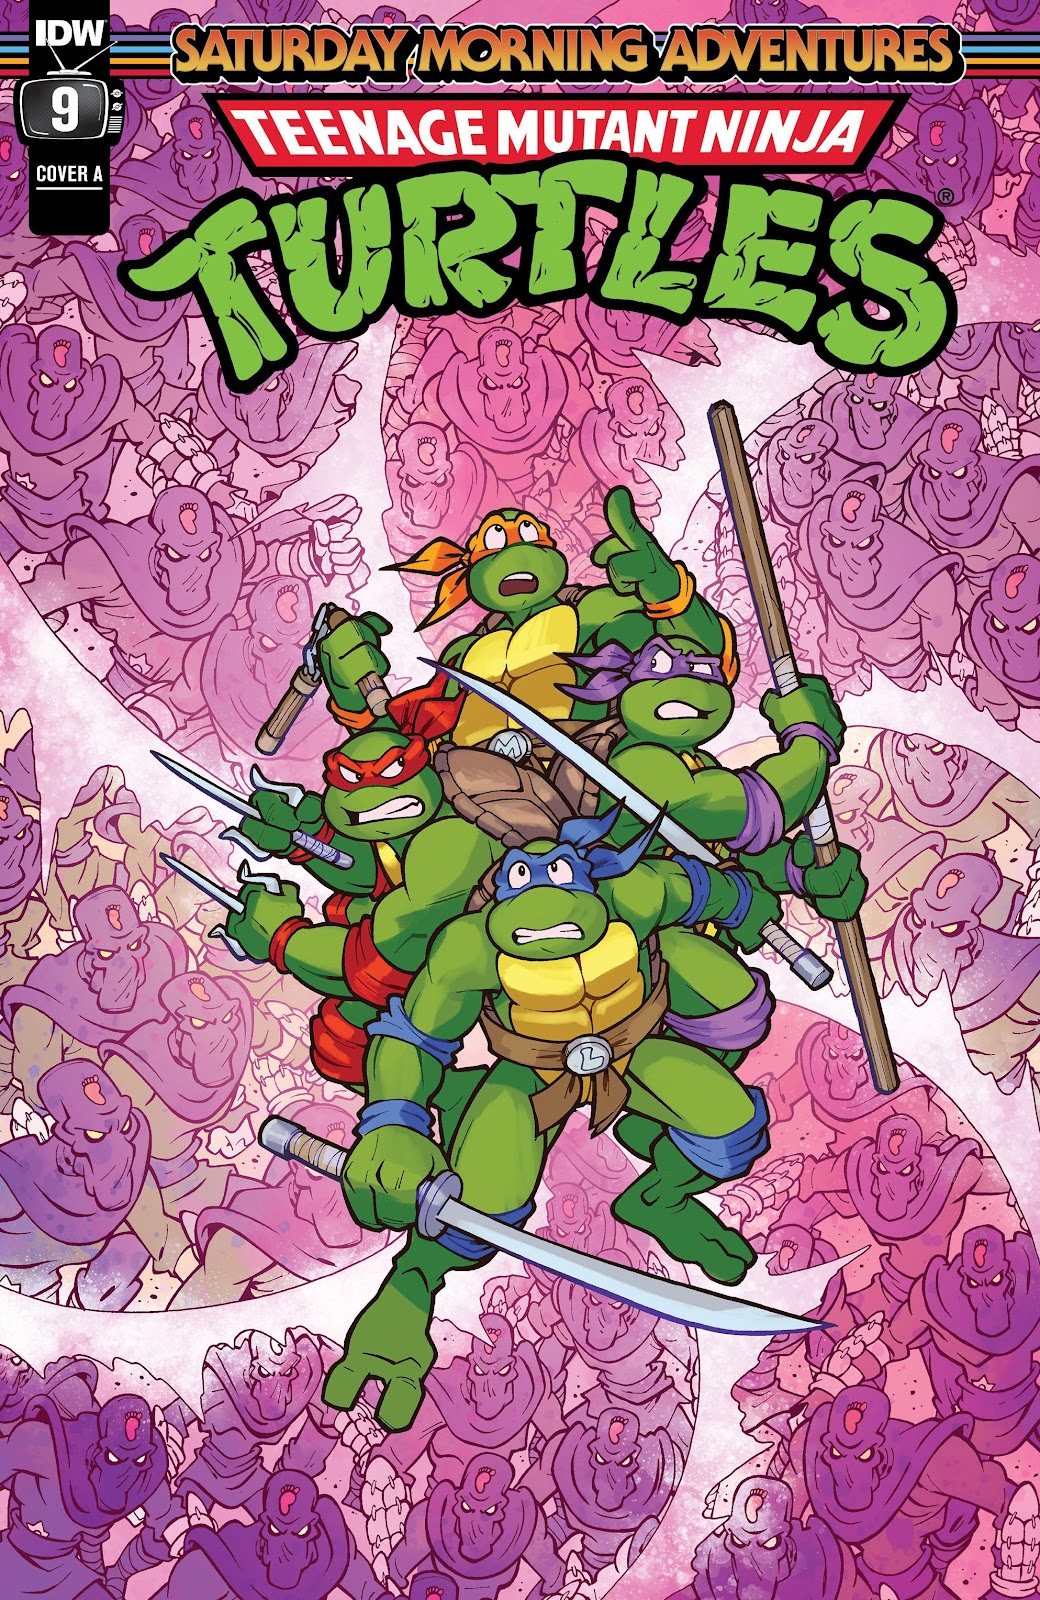 Teenage Mutant Ninja Turtles: Saturday Morning Adventures Continued issue 9 - Page 1